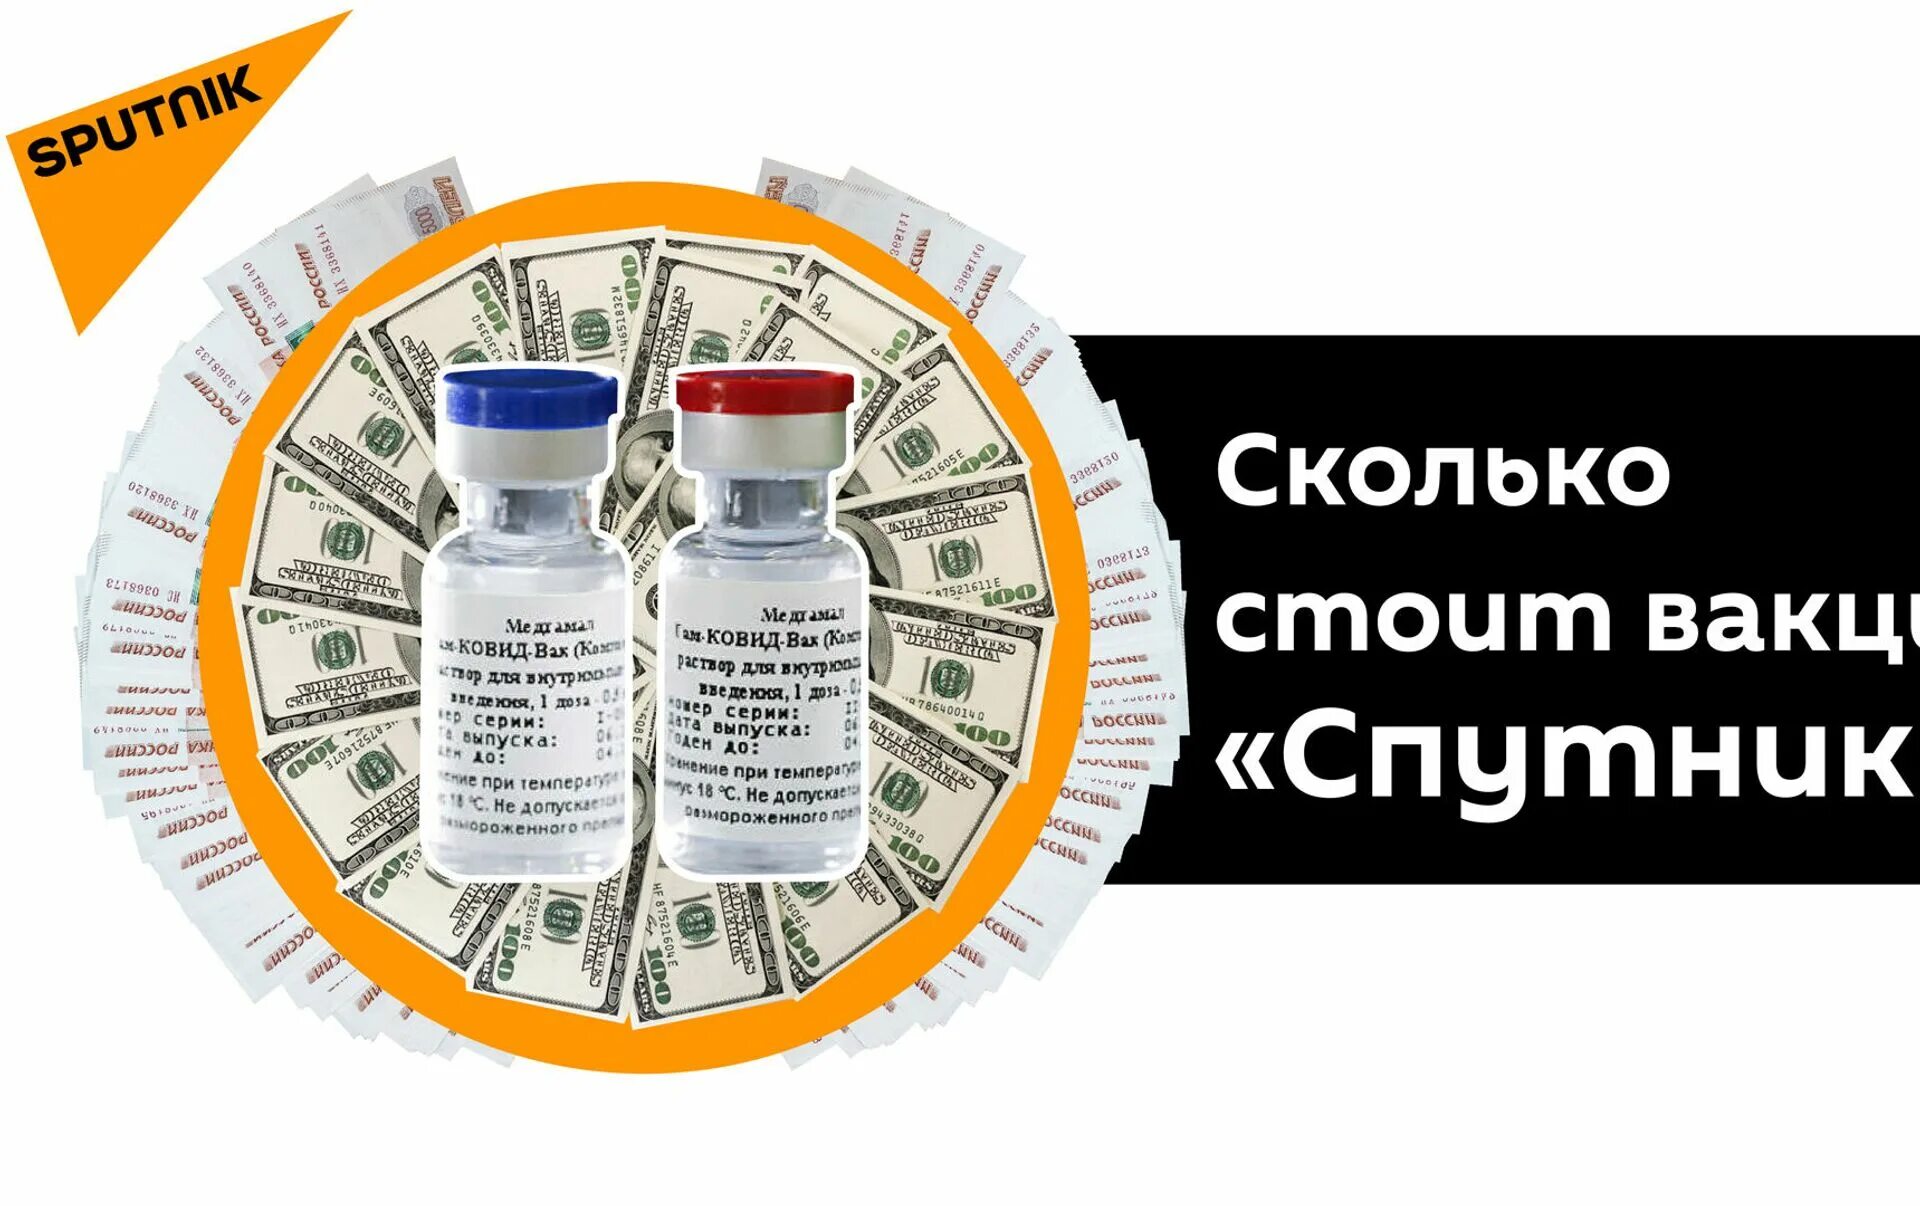 Цены на лекарства Sputnik. Низкие цены на лекарства. Низкая стоимость препарата.